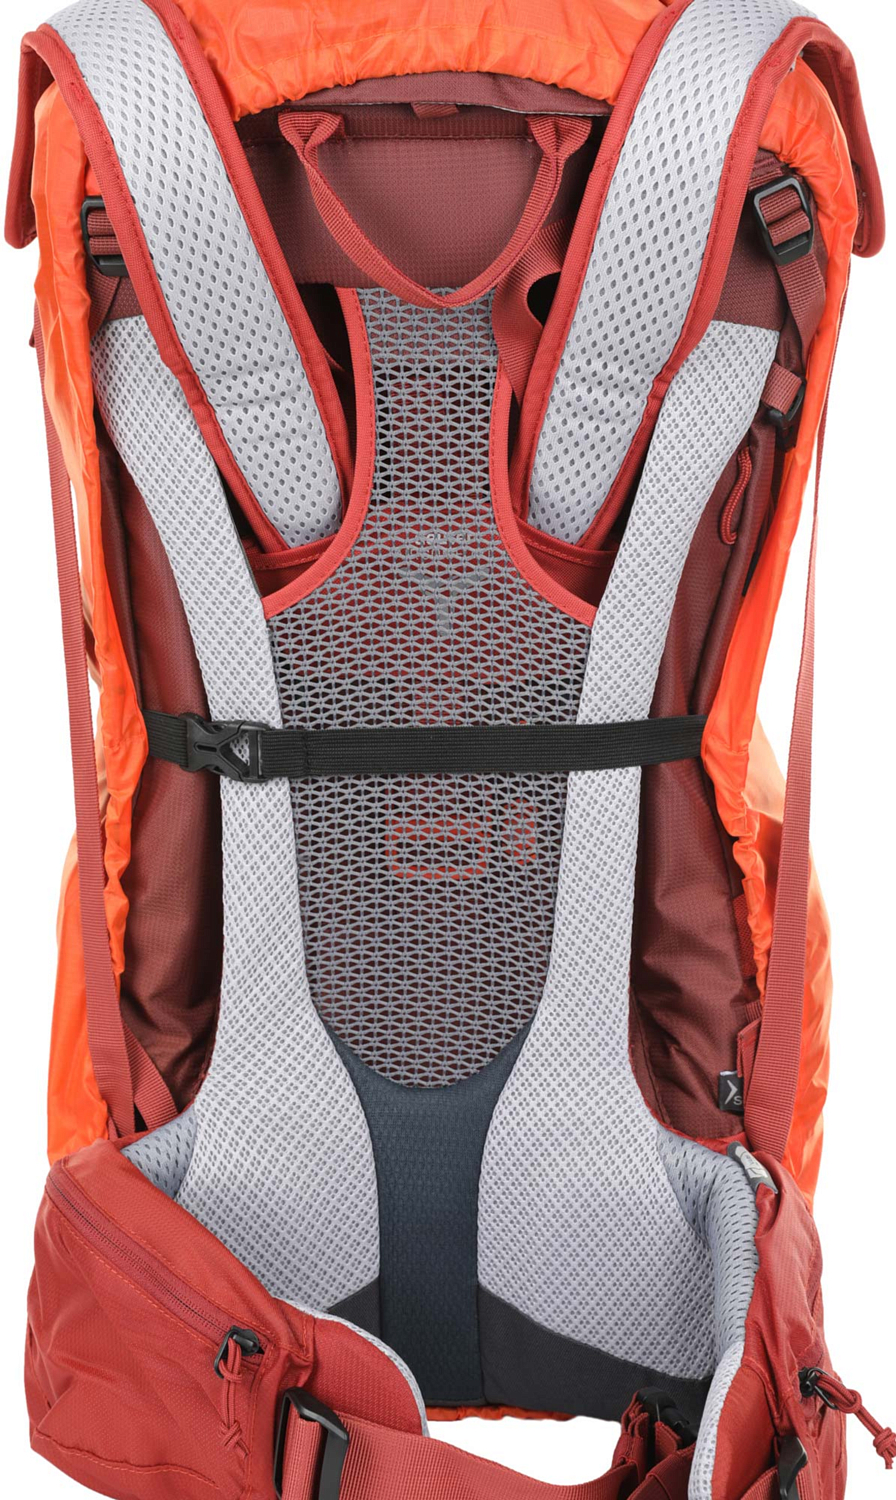 Чехол от дождя Naturehike Backpack Covers S 20-30L Orange